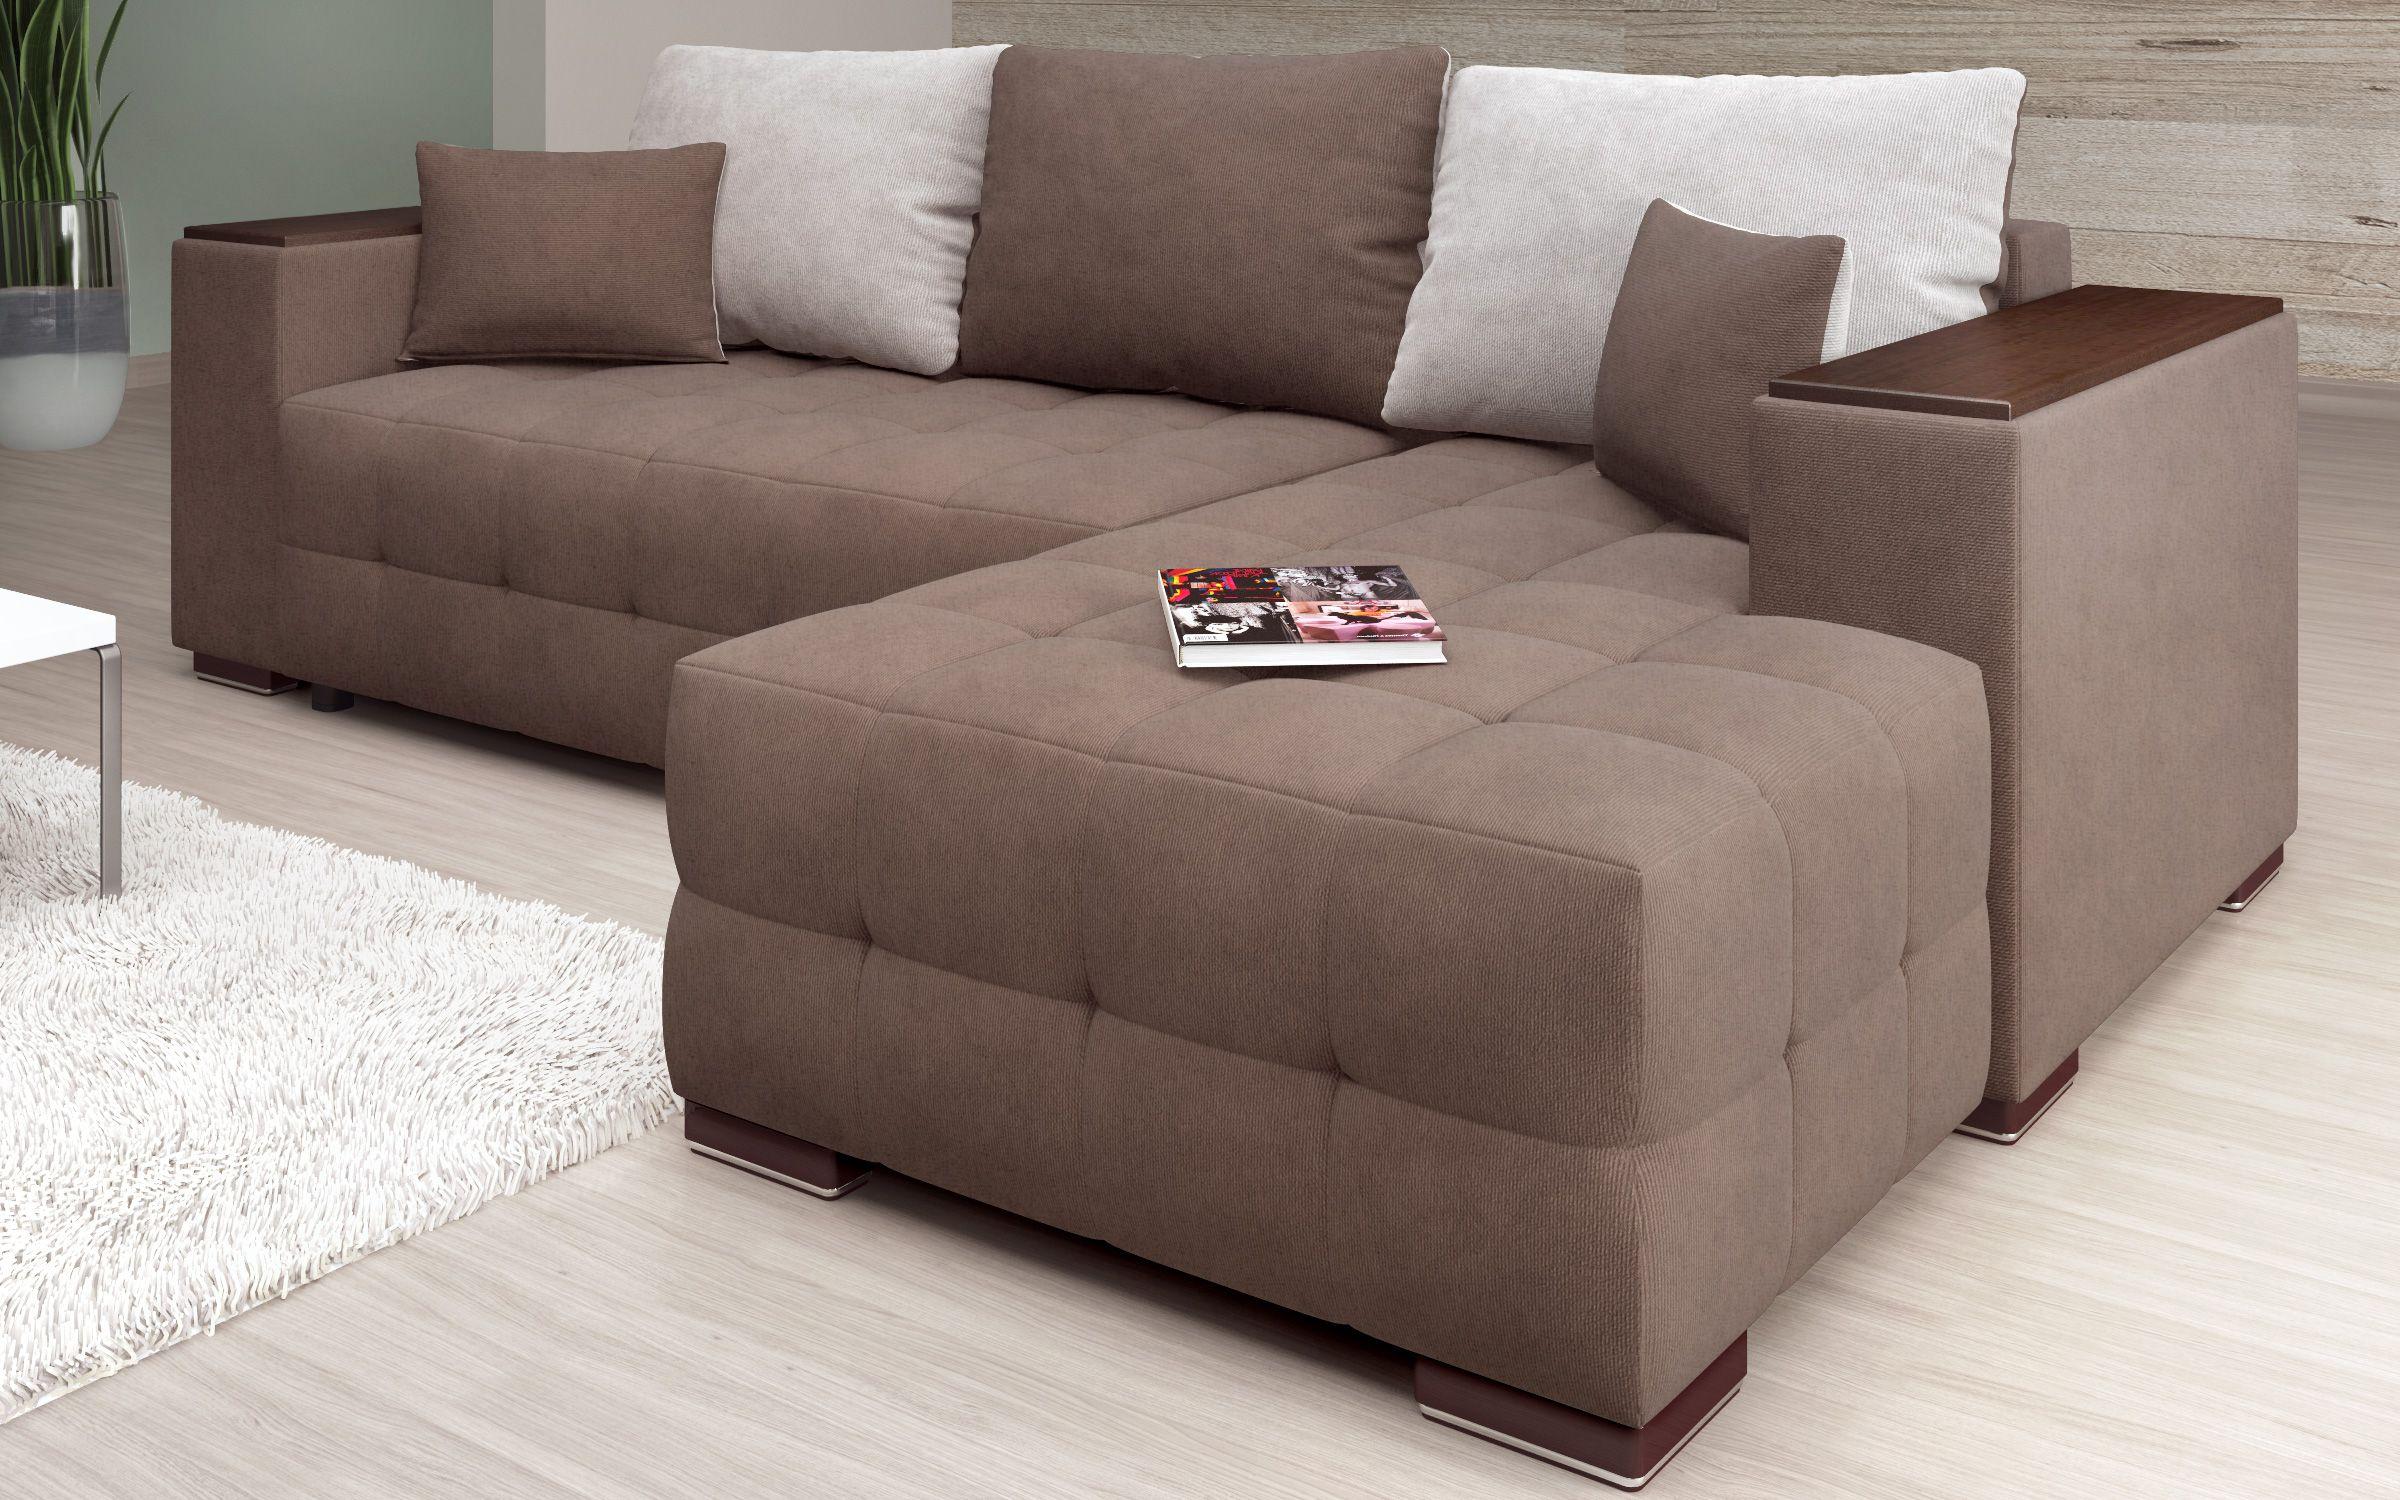 Γωνιακός καναπές - κρεβάτι με ανάκλιντρο και μπράτσο μίνι ραφιέρα Melvin Spring S, καφέ + μπεζ  6